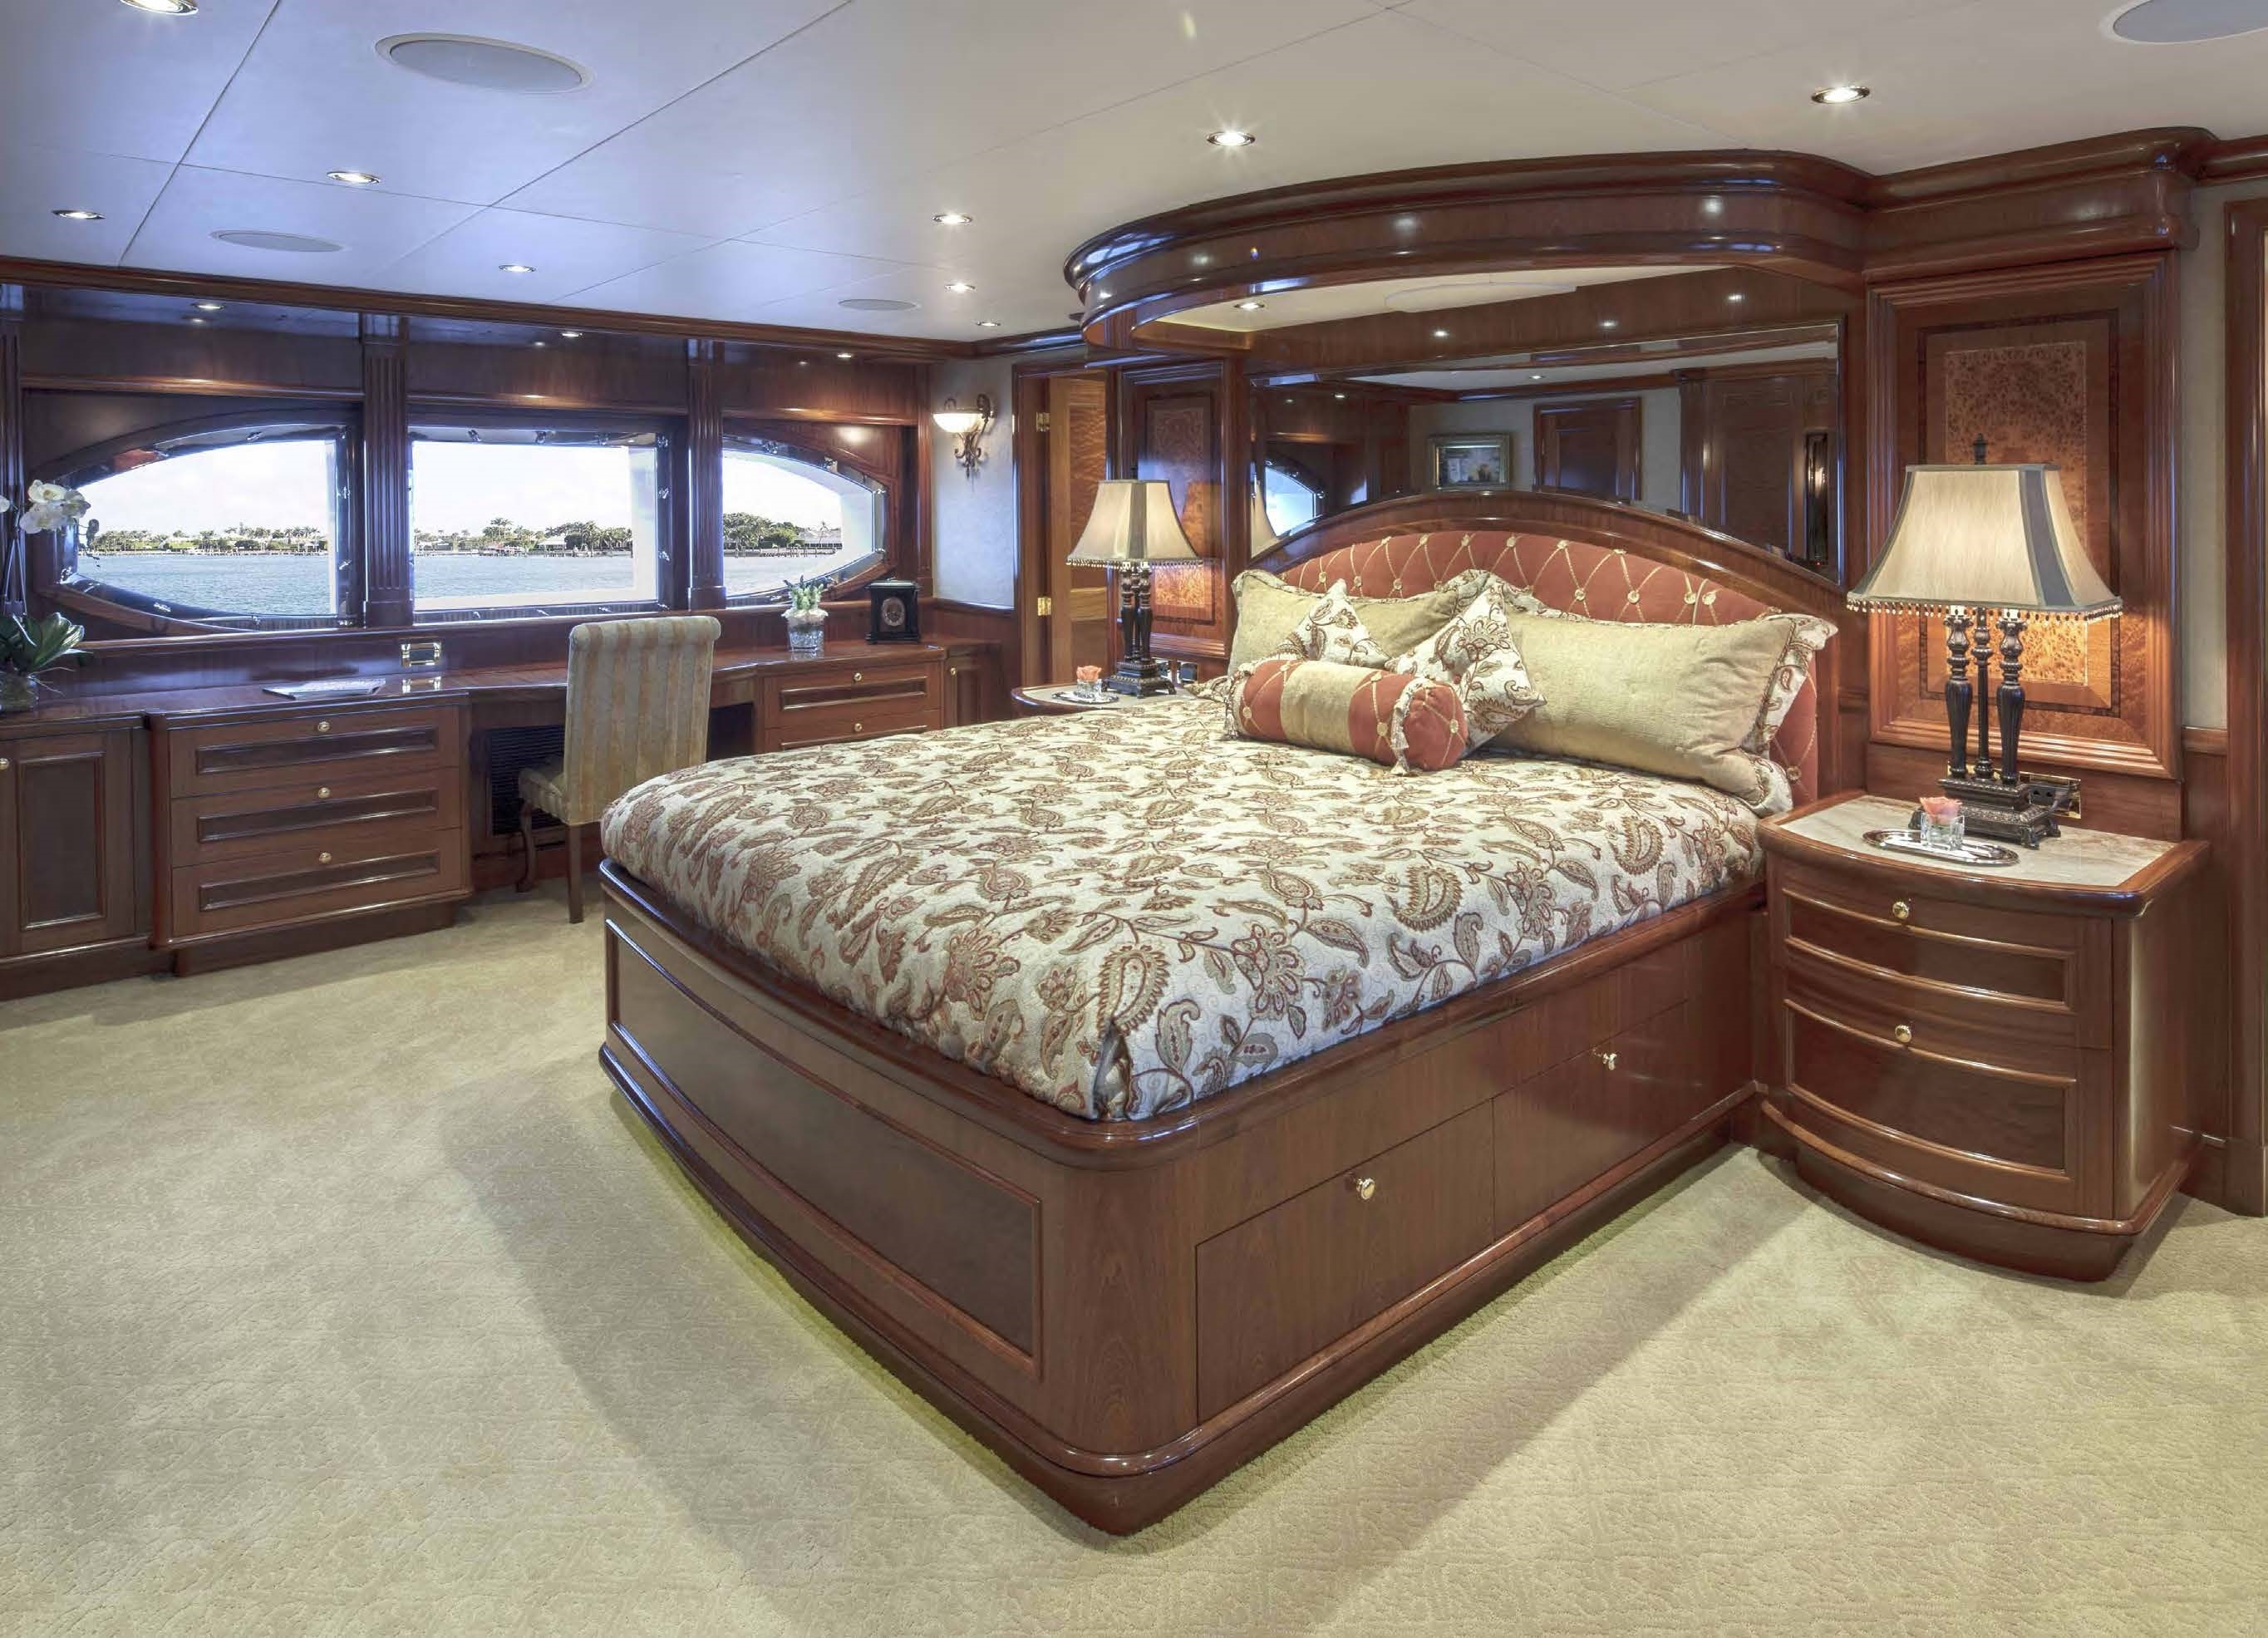 3 bedroom 2 bathroom yacht